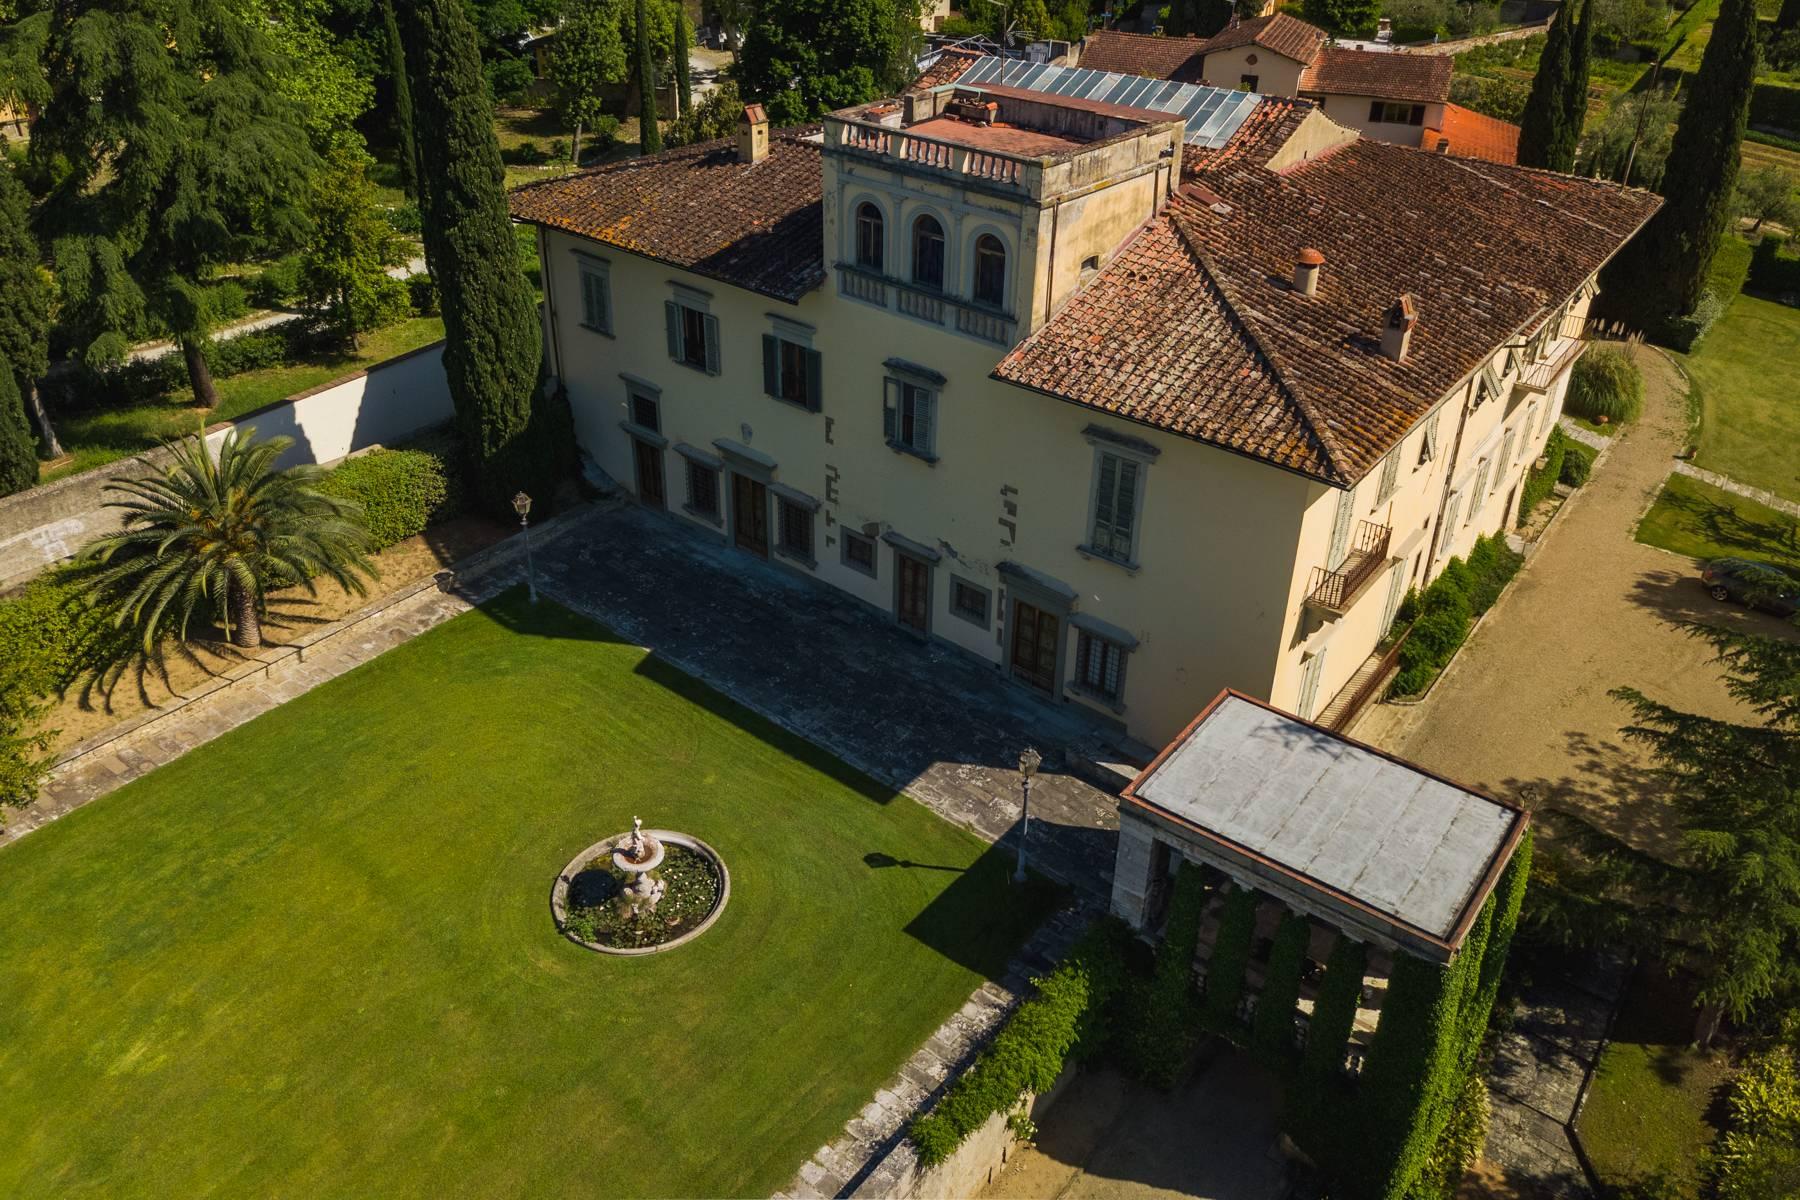 Elegante Villa aus dem 14. Jahrhundert mit einem Hektar Park in Florenz - 2